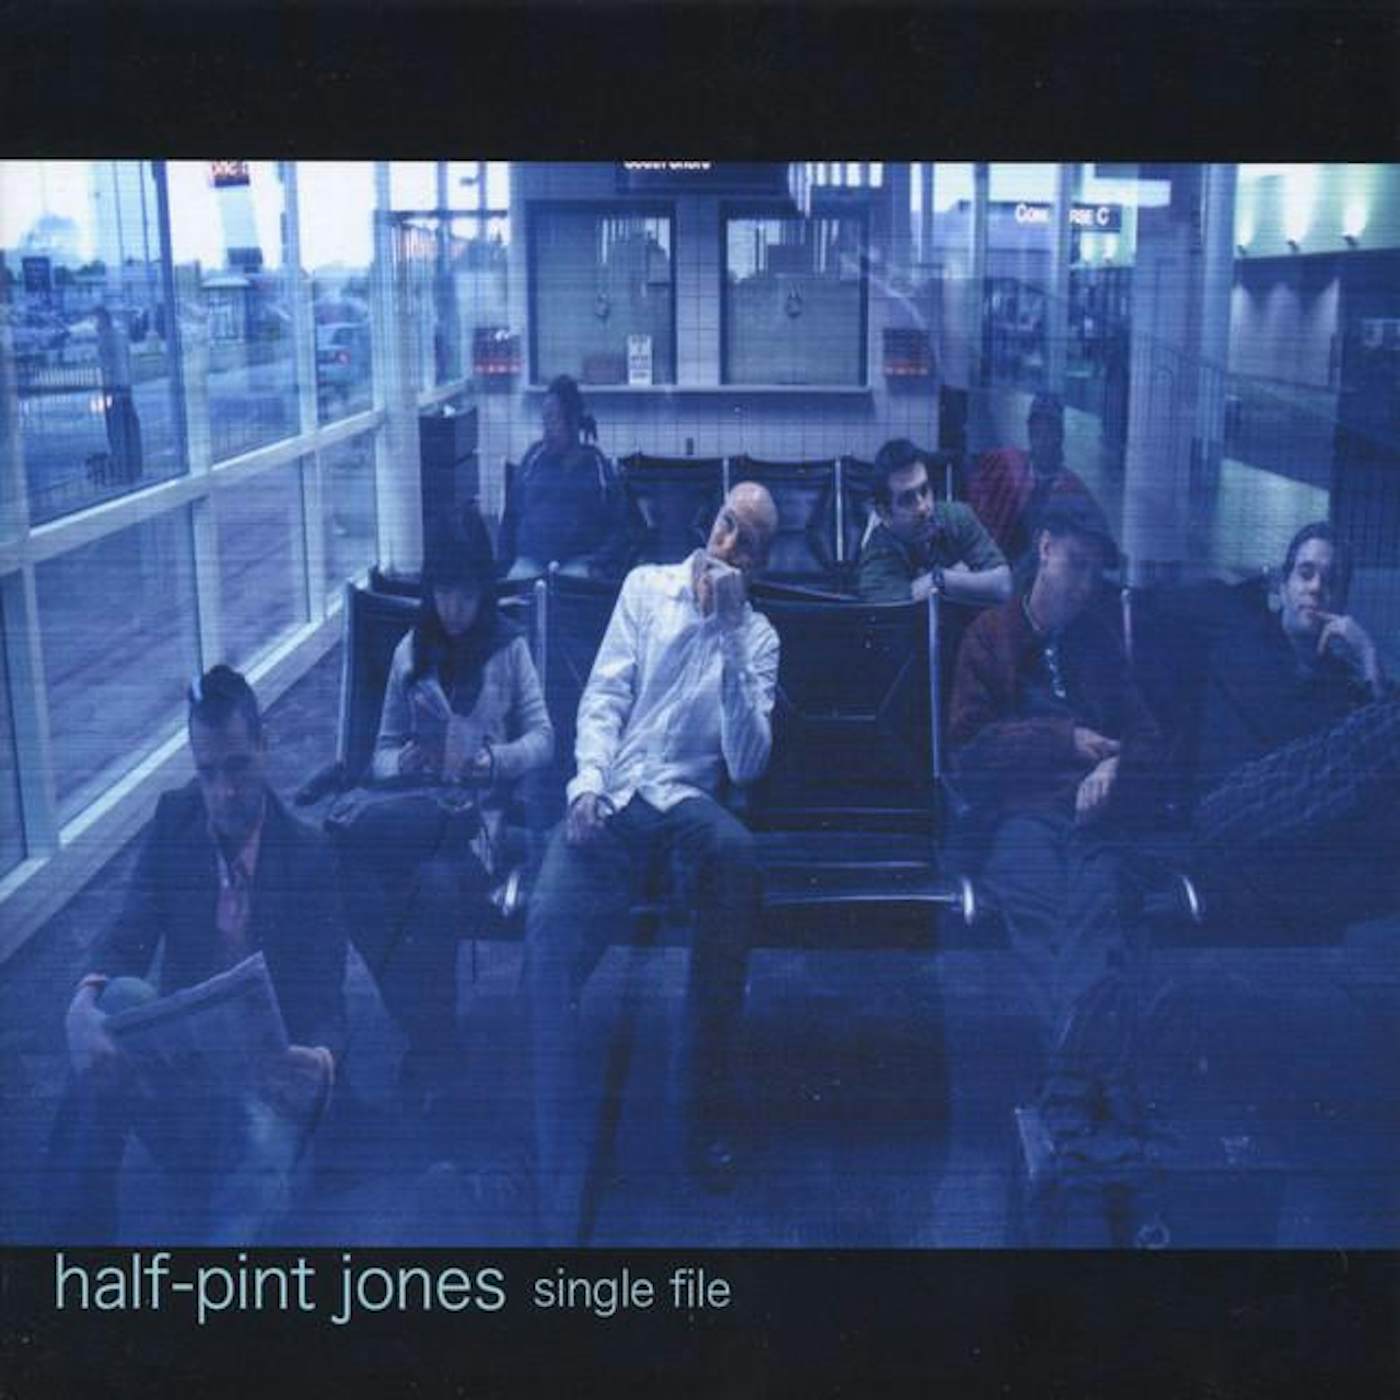 Half-Pint Jones